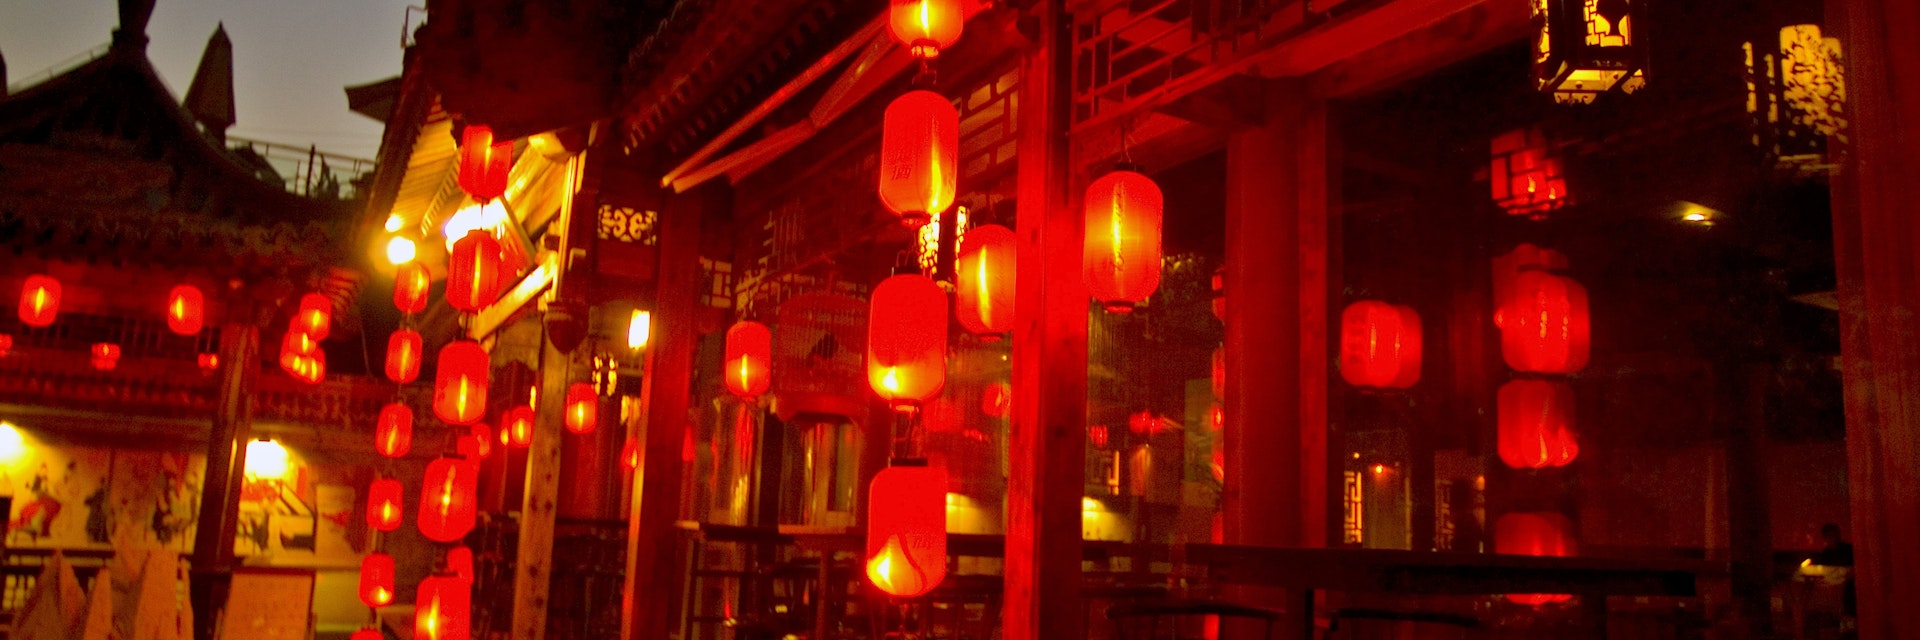 Lanterns at Qianhai Dongyuan/ Qianhai Beiyan (Lotus Lane) also known as The Back Lakes.